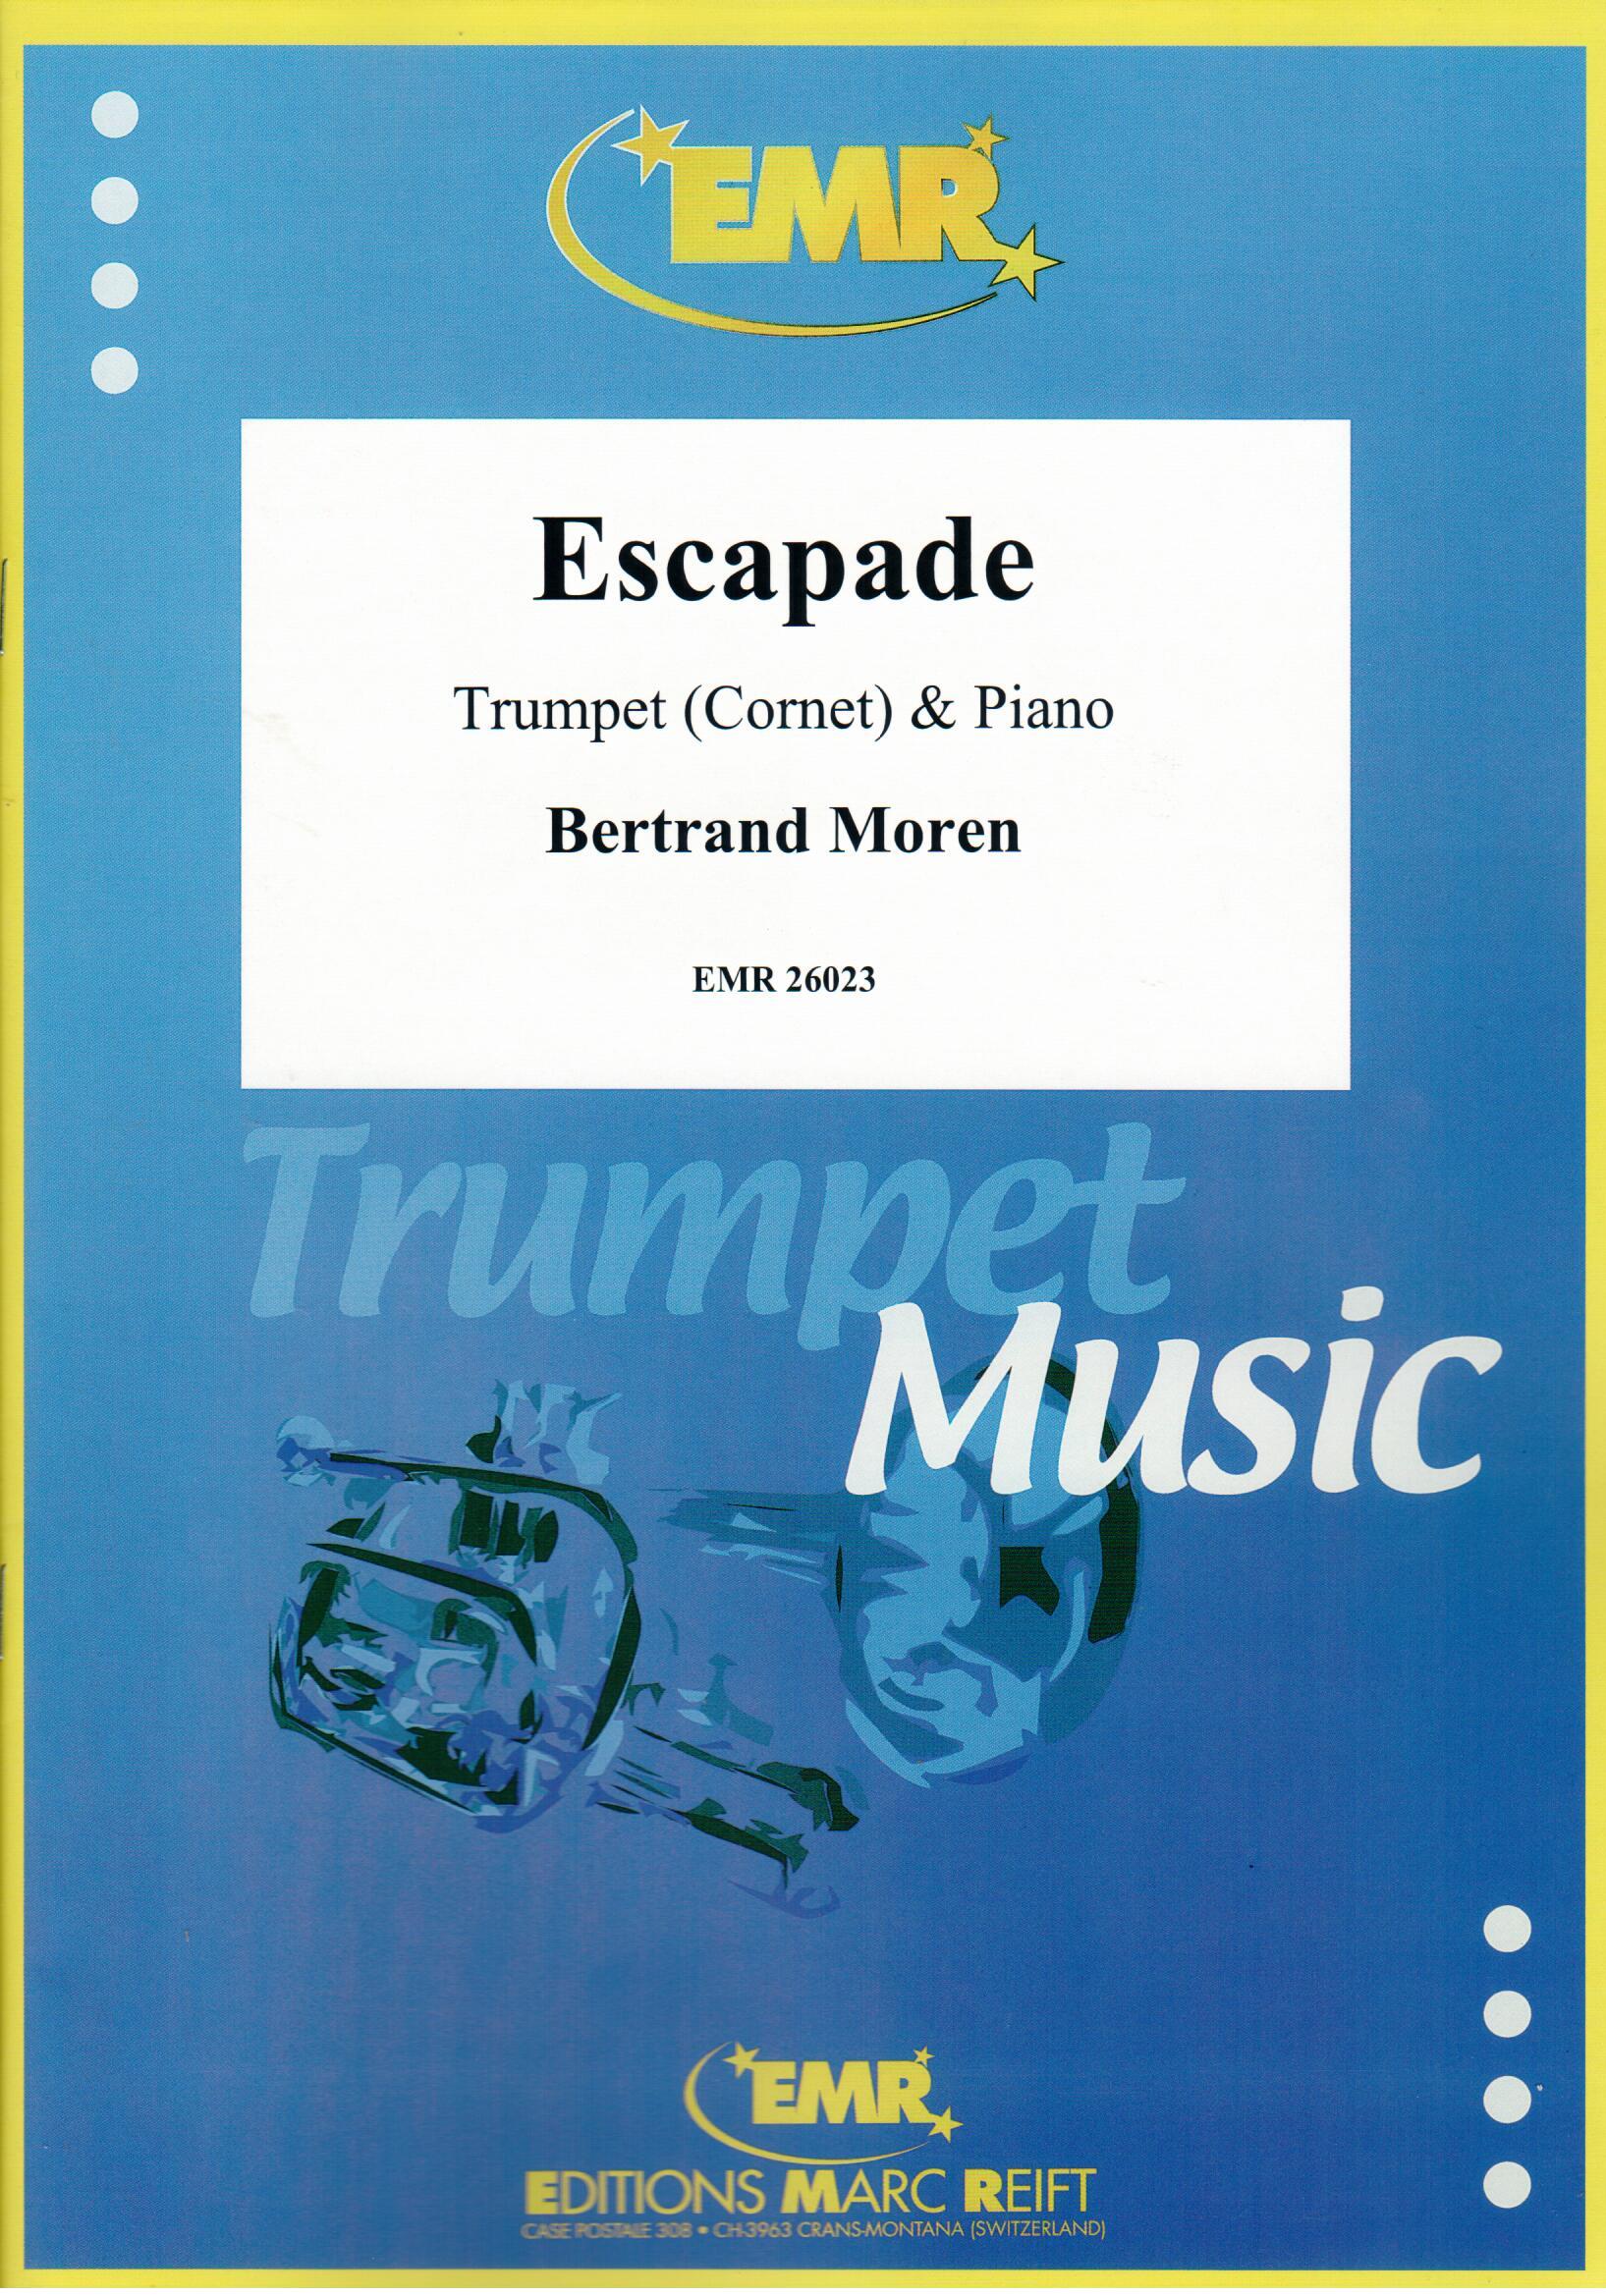 ESCAPADE, SOLOS - B♭. Cornet/Trumpet with Piano